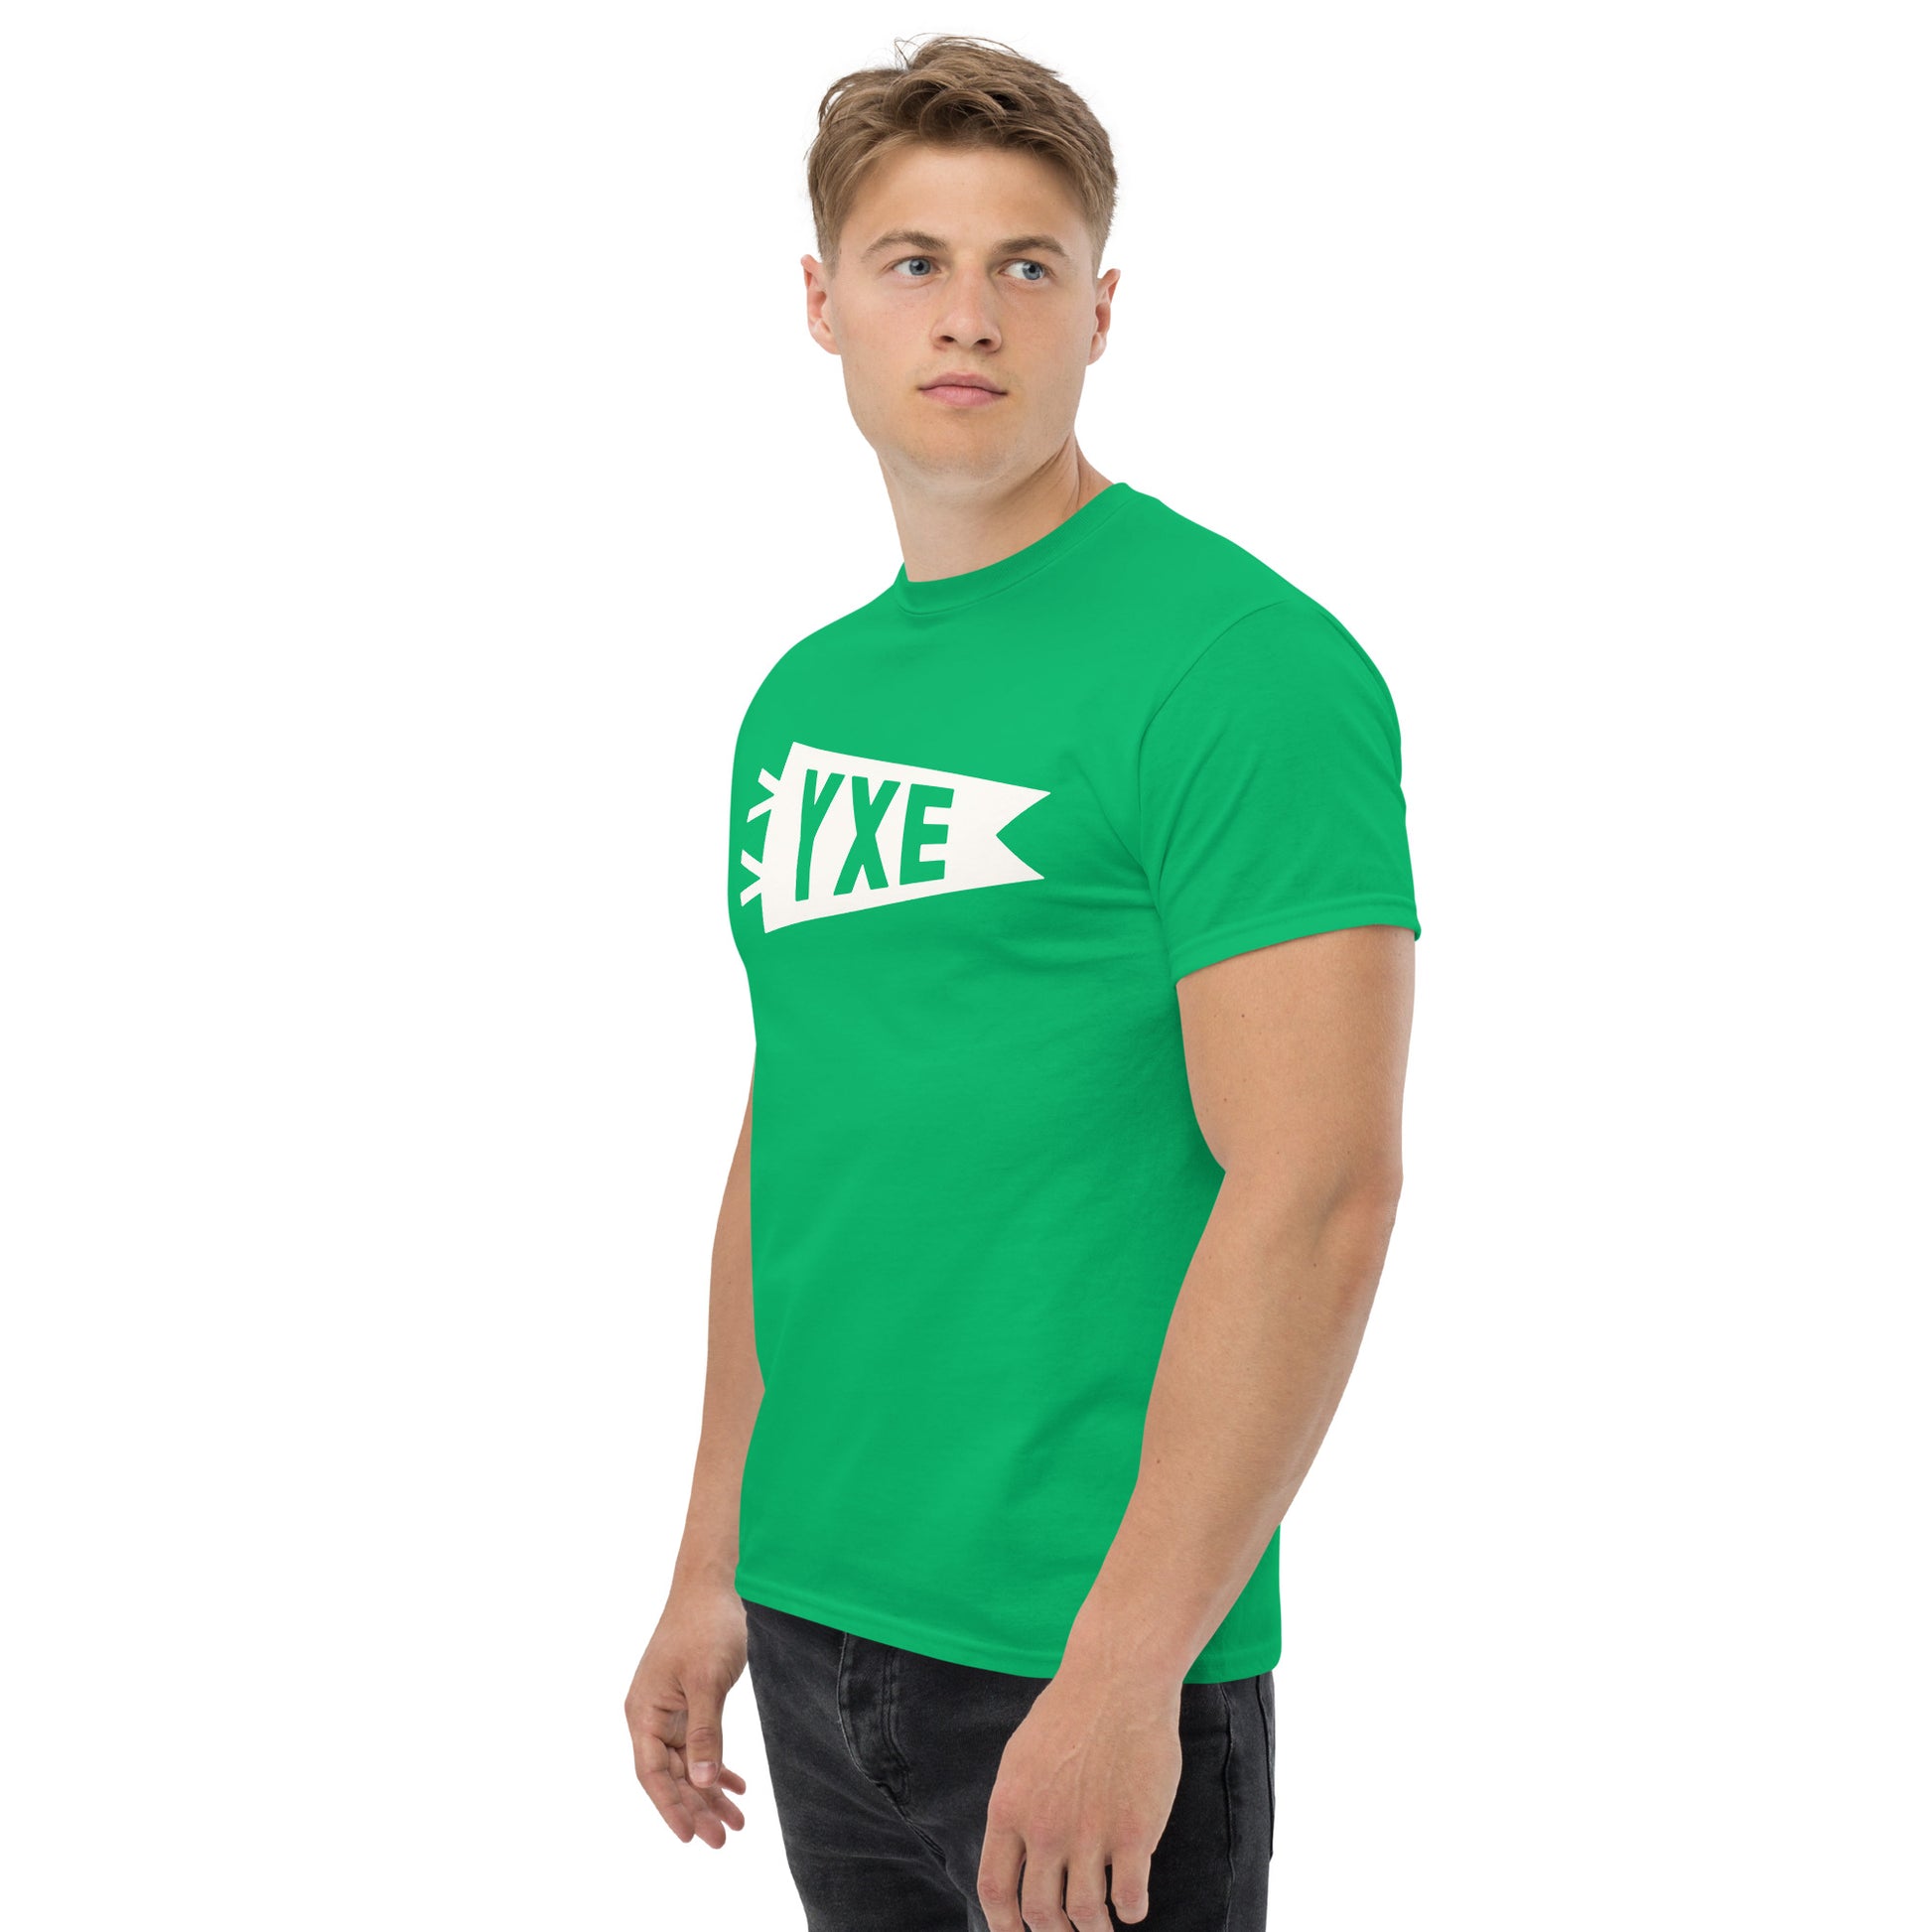 Airport Code Men's T-Shirt - White Graphic • YXE Saskatoon • YHM Designs - Image 05